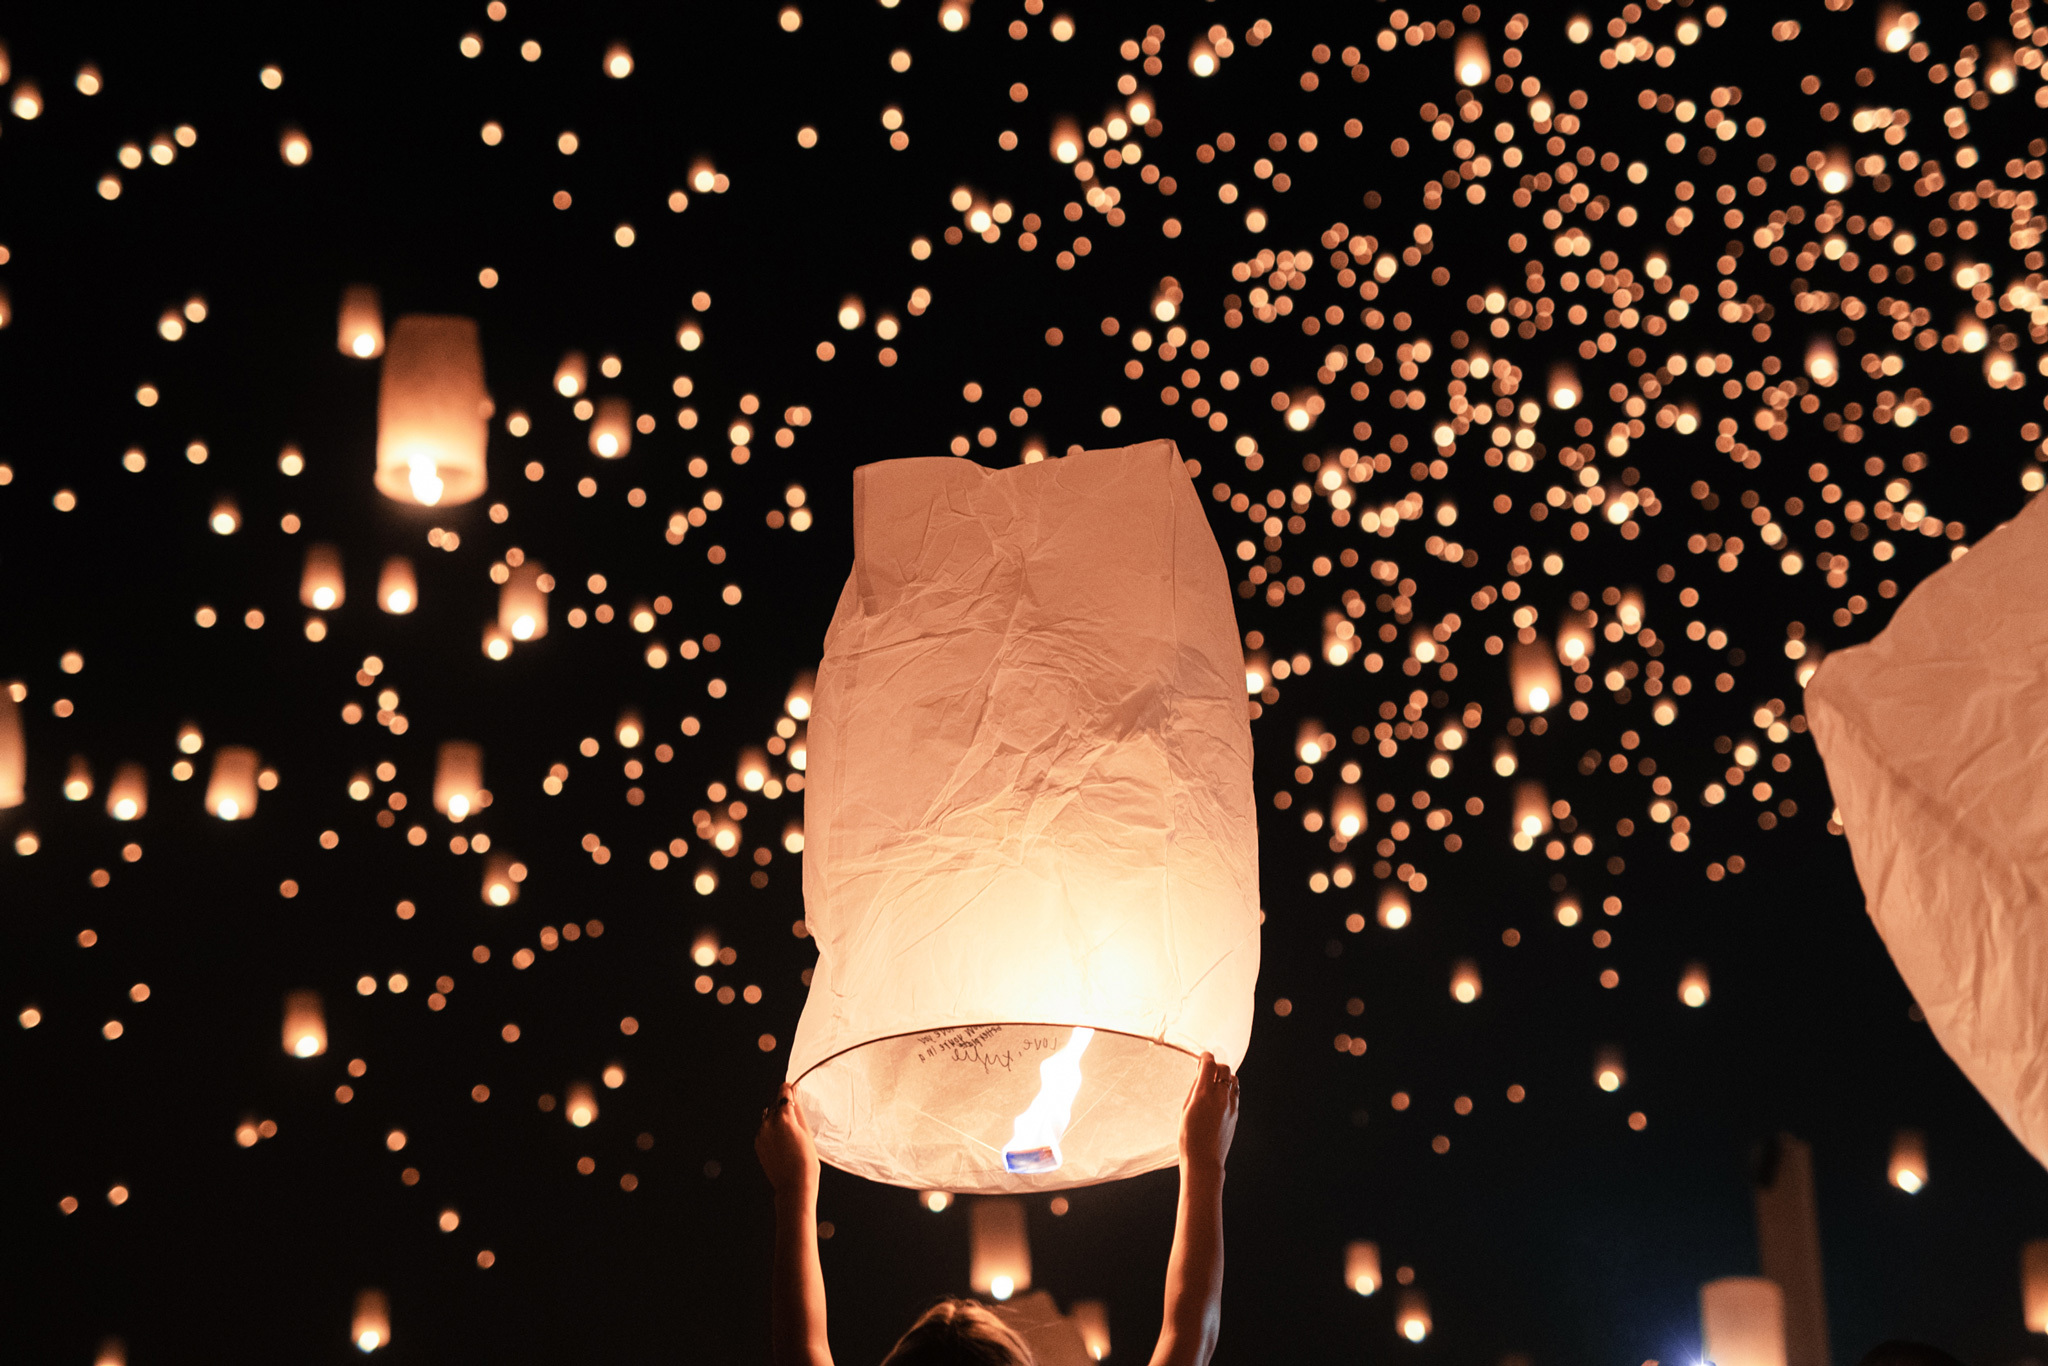 sky lantern festival usa